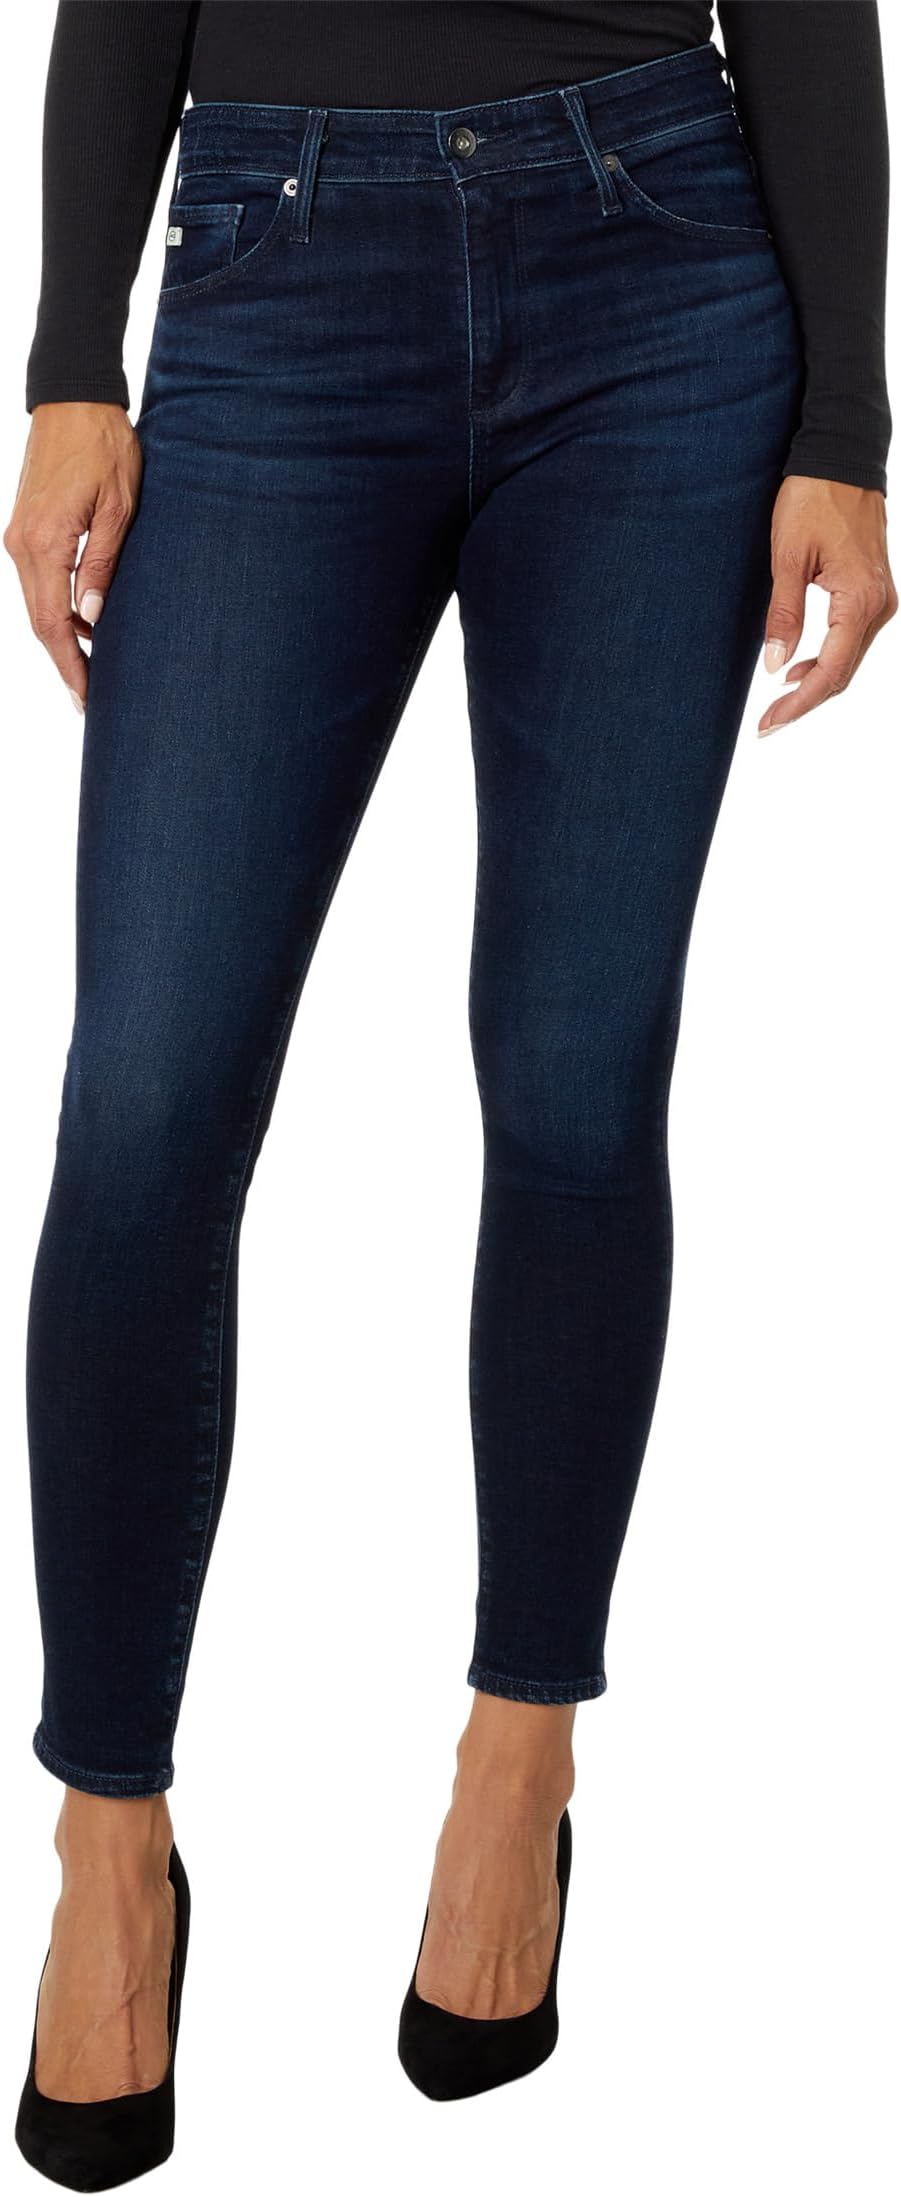 Джинсы Farrah High-Waisted Skinny Ankle in Vp Soho AG Jeans, цвет Vp Soho